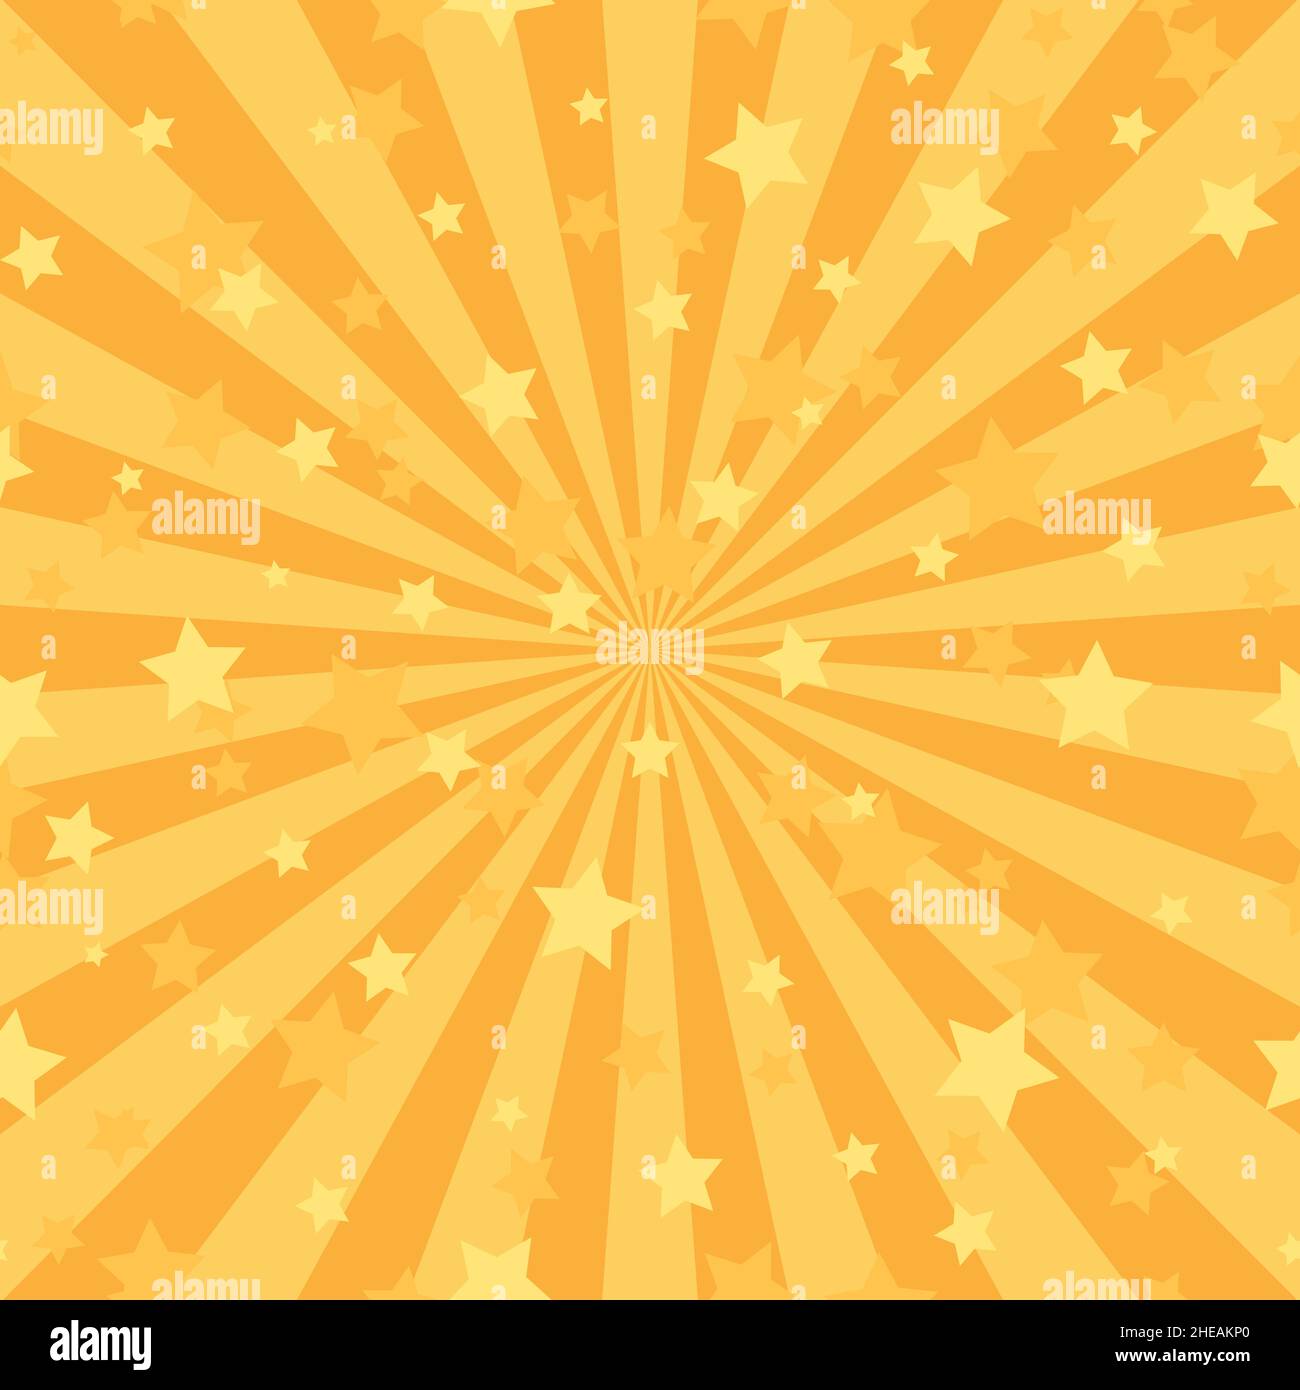 Sfondo astratto della luce solare. Sfondo arancione a raffica con stelle brillanti e brillanti. Illustrazione vettoriale. Raggio del sole sunburst pattern sfondo. Illustrazione Vettoriale